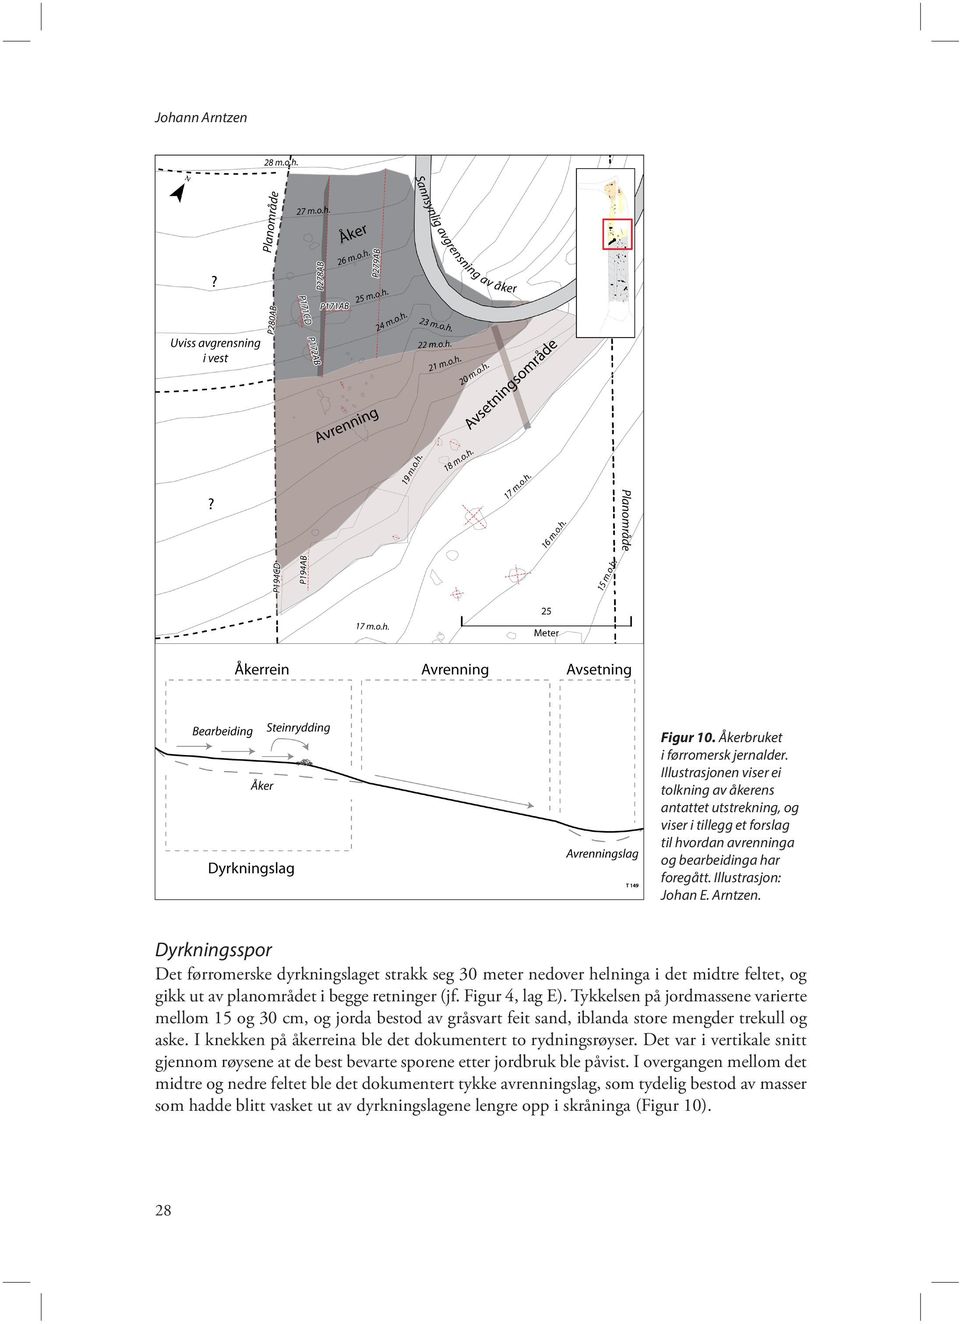 Dyrkningsspor Det førromerske dyrkningslaget strakk seg 30 meter nedover helninga i det midtre feltet, og gikk ut av planområdet i begge retninger (jf. Figur 4, lag E).